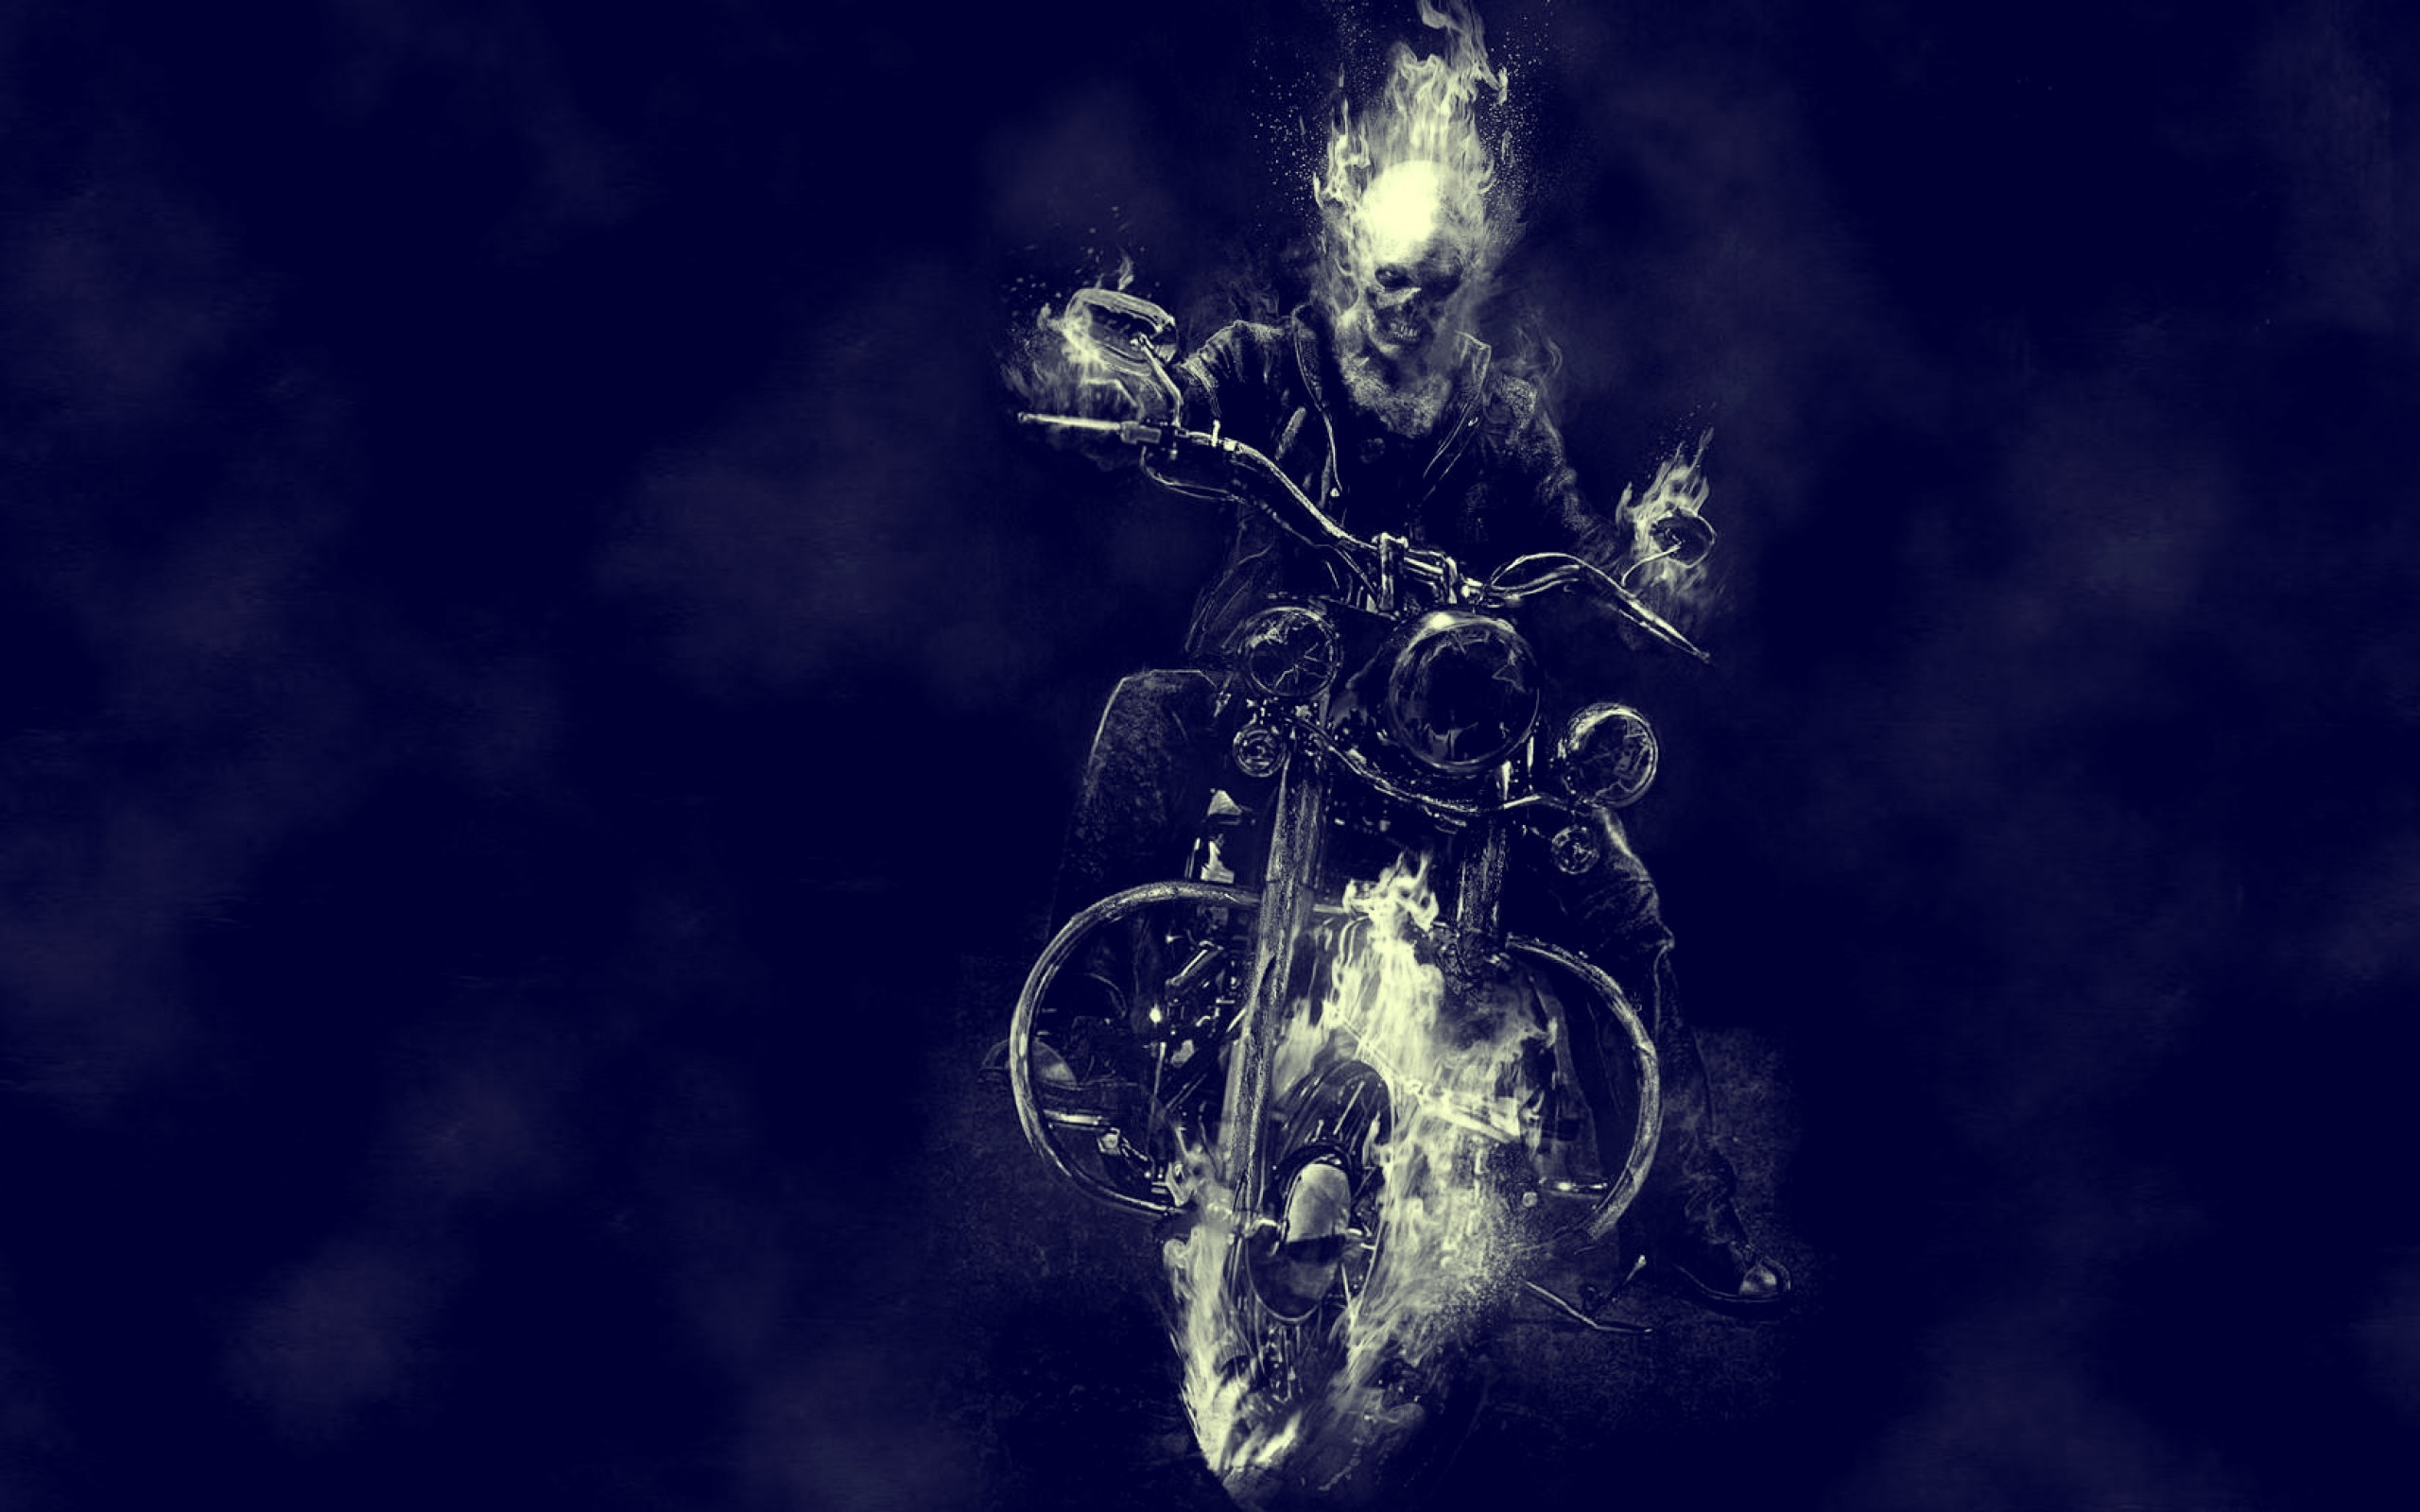 Ghost Rider Movie Bike Motorcycle Skull wallpaper | Best HD Wallpapers